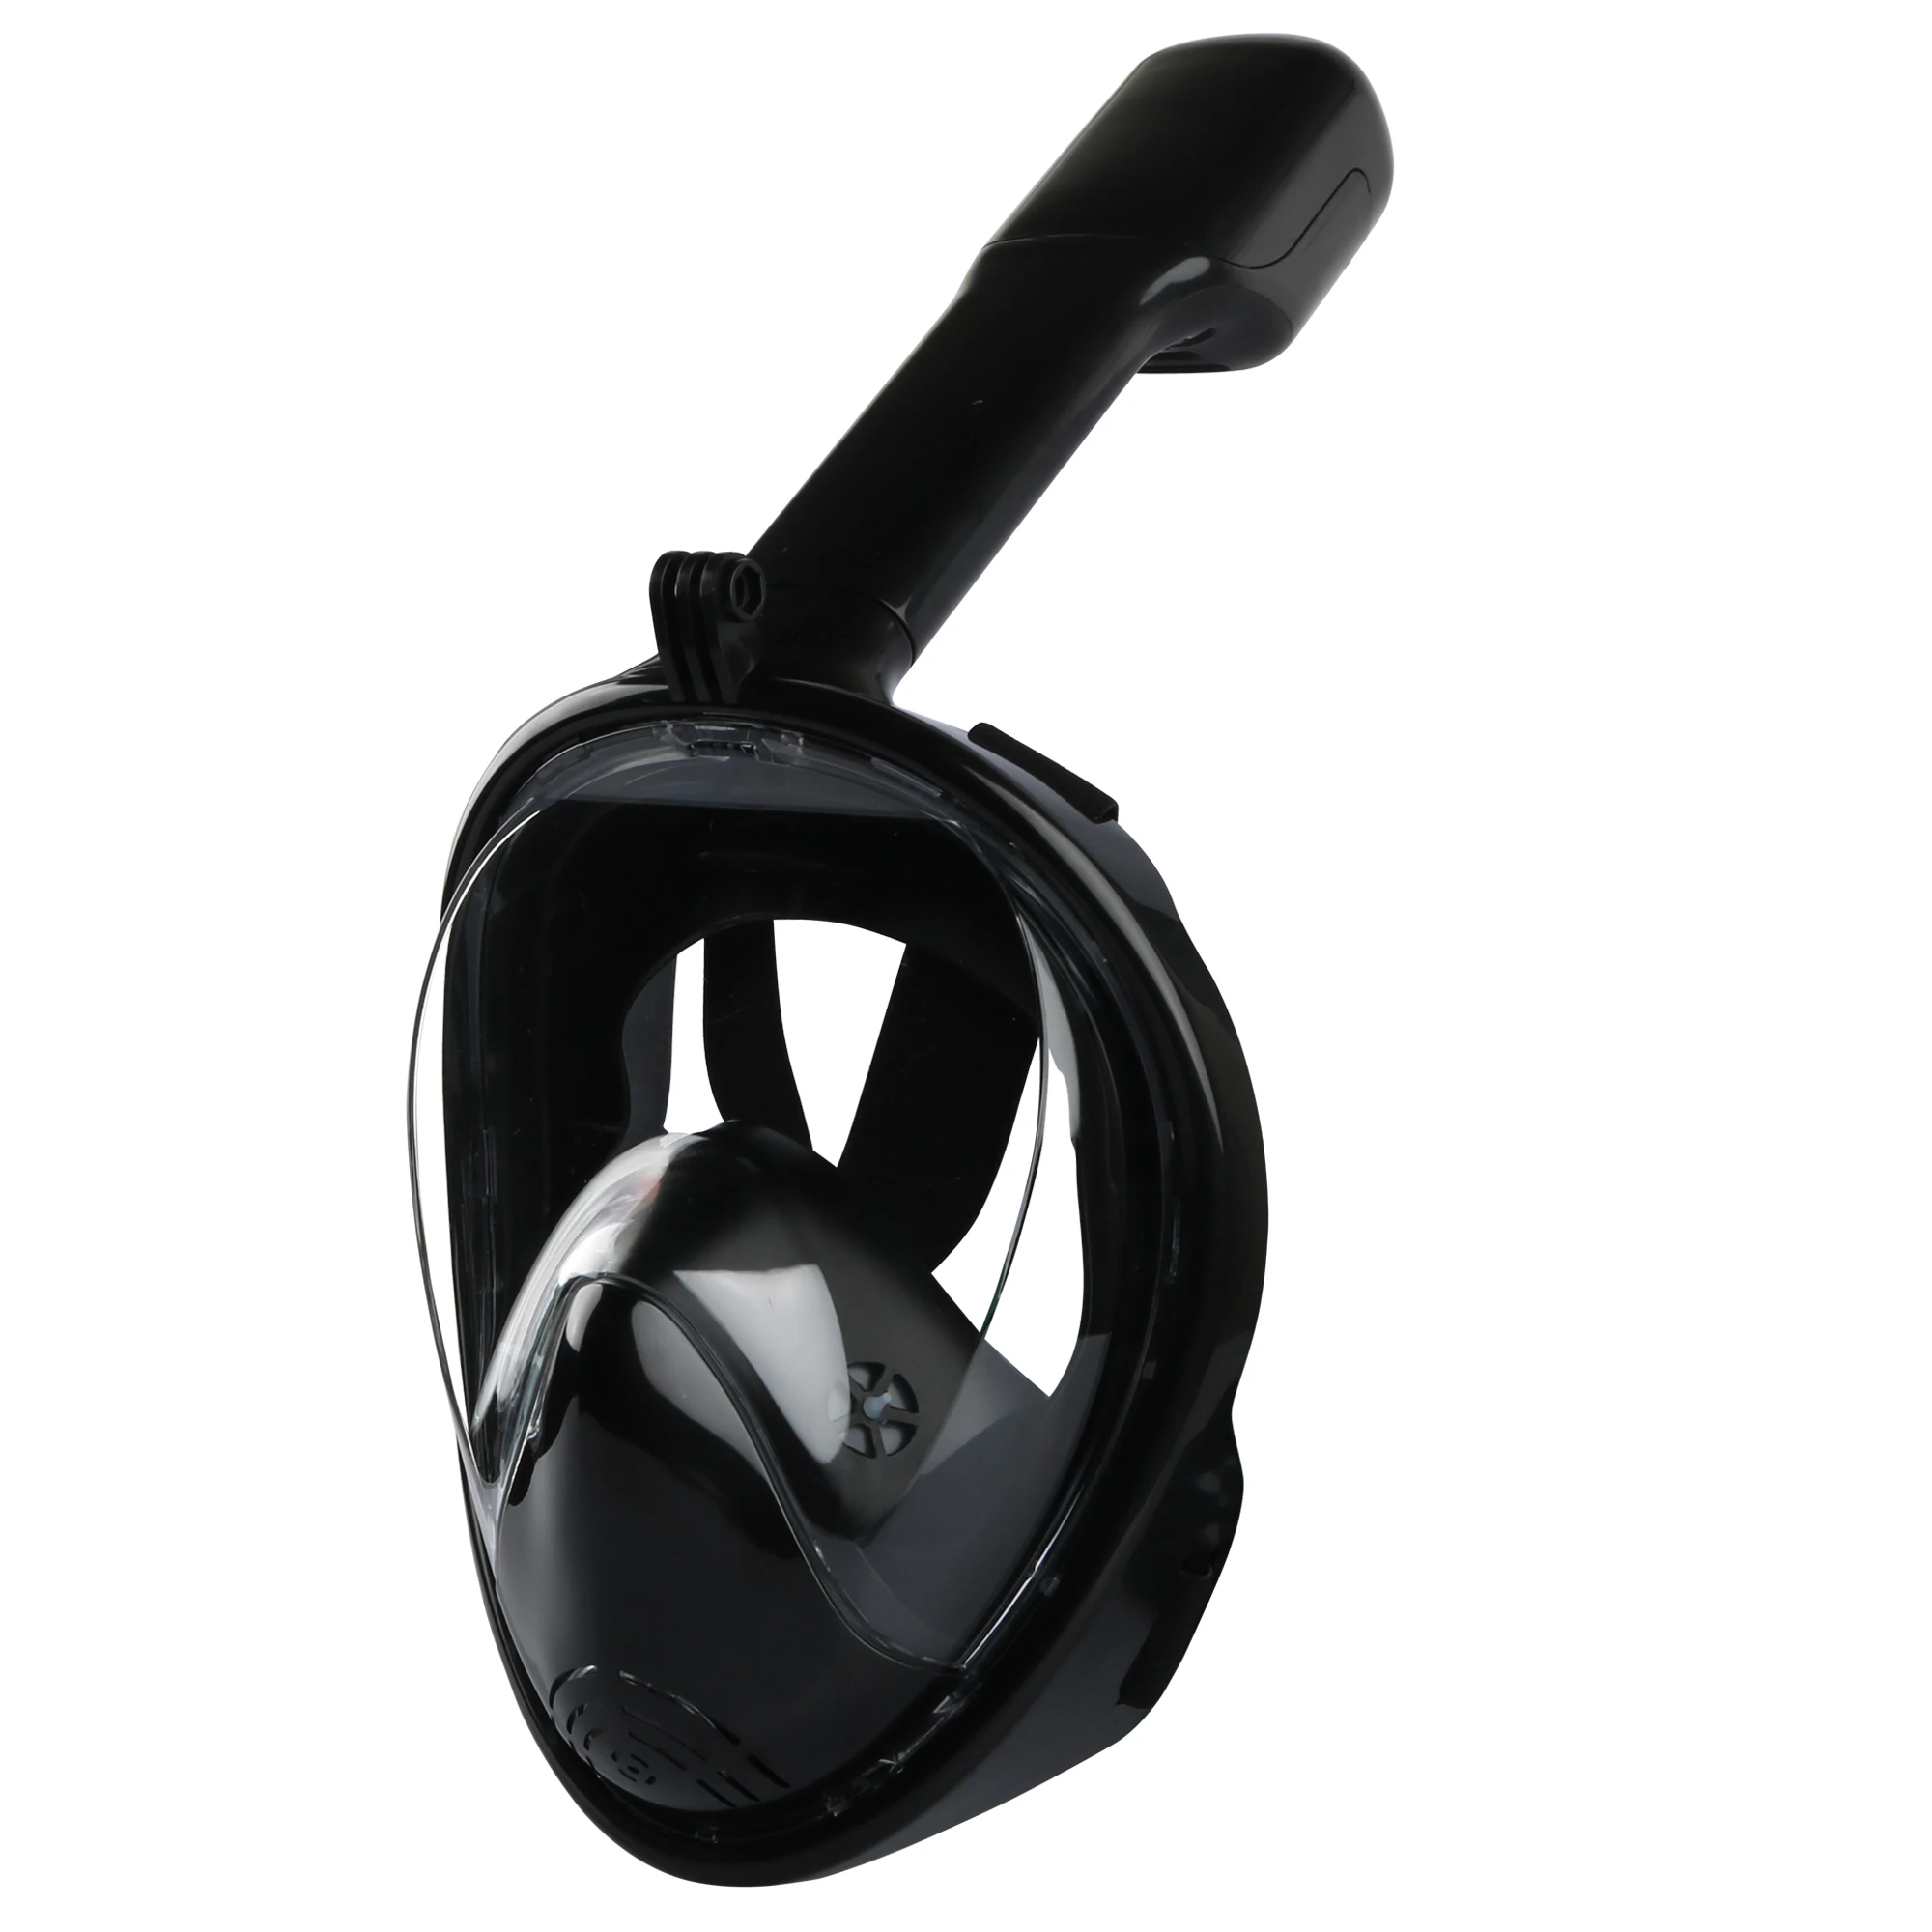 Регулируемый ремешок подводная противотуманная маска для подводного плавания, ныряния с дыхательной трубкой для занятий плаванием широкая область обзора дышащая маска для подводного плавания с полным лицом